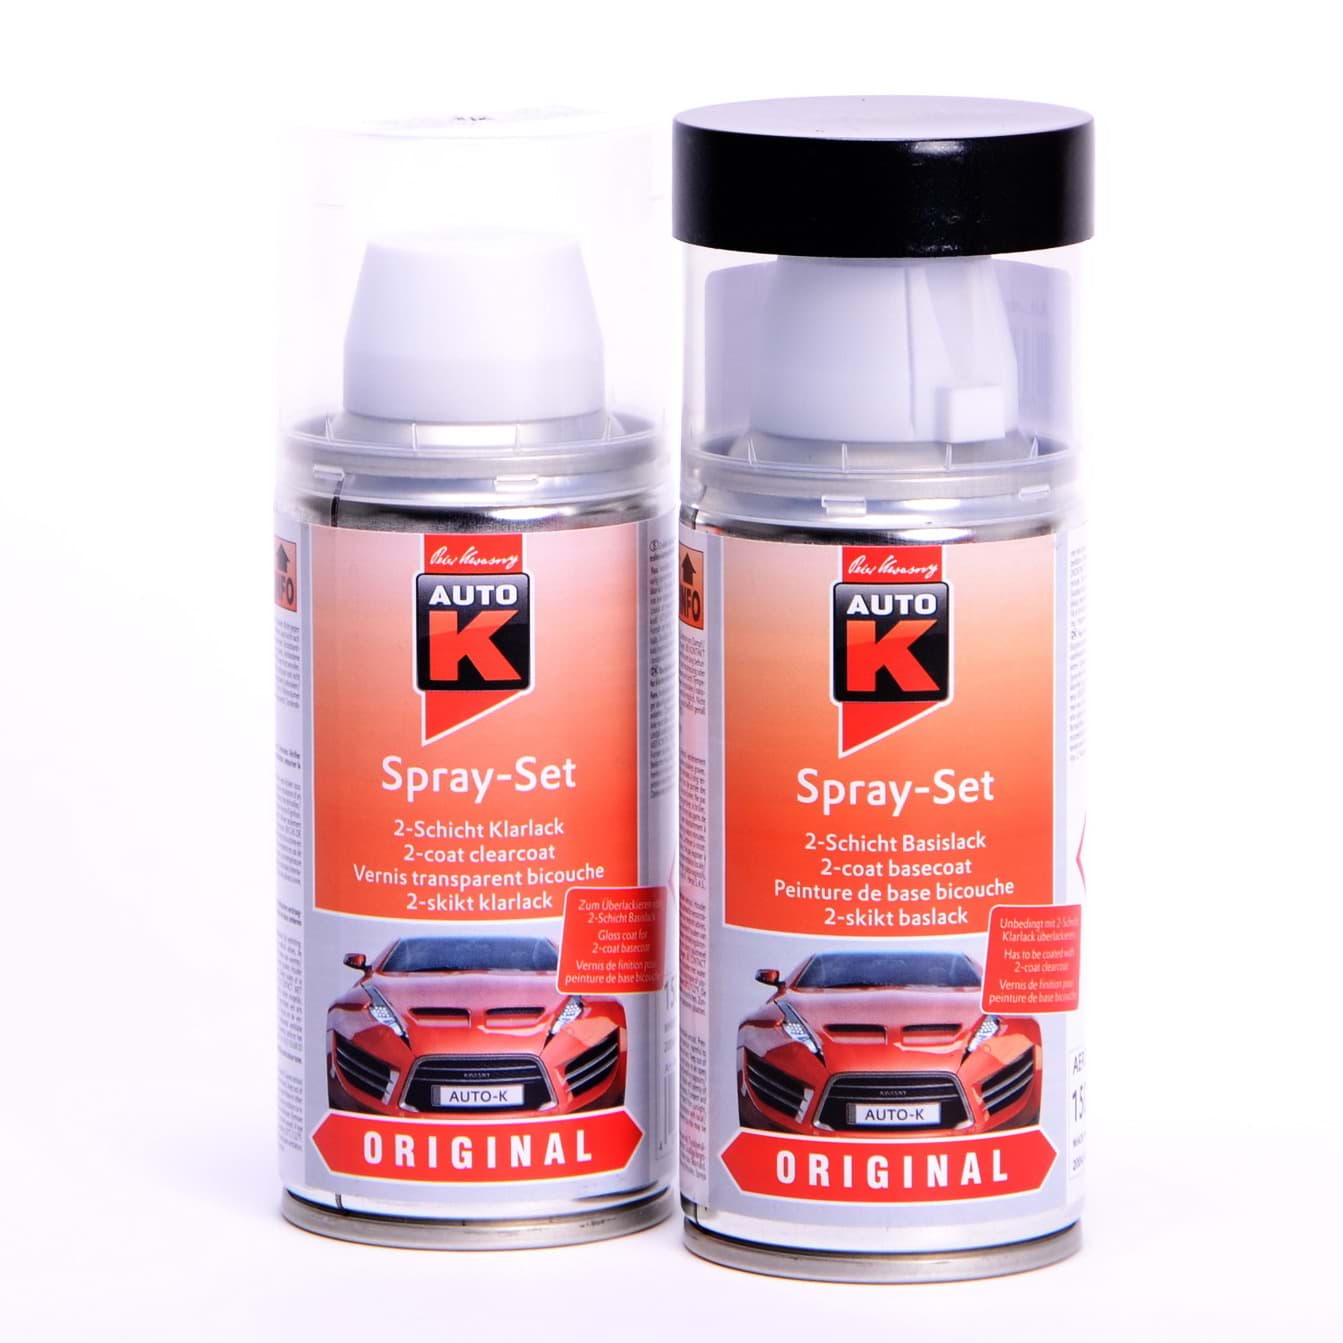 Auto-K Spray-Set Autolack für Mercedes 792 Palladiumsilber met 23345 resmi